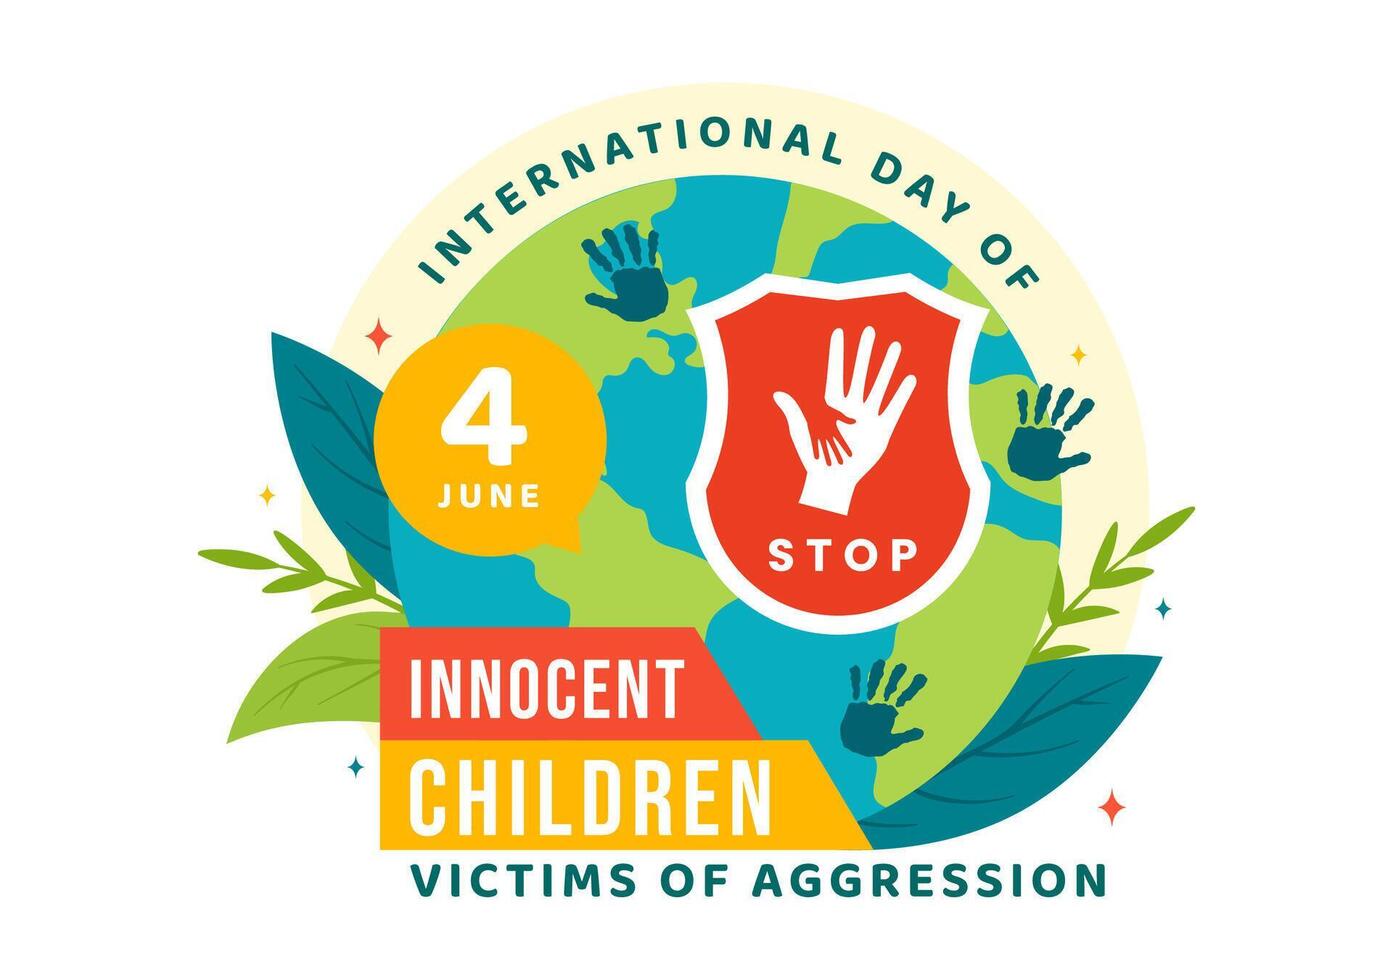 internacional día de inocente niños víctimas de agresión vector ilustración en 4 4 junio con niños triste pensativo y llantos en plano dibujos animados antecedentes